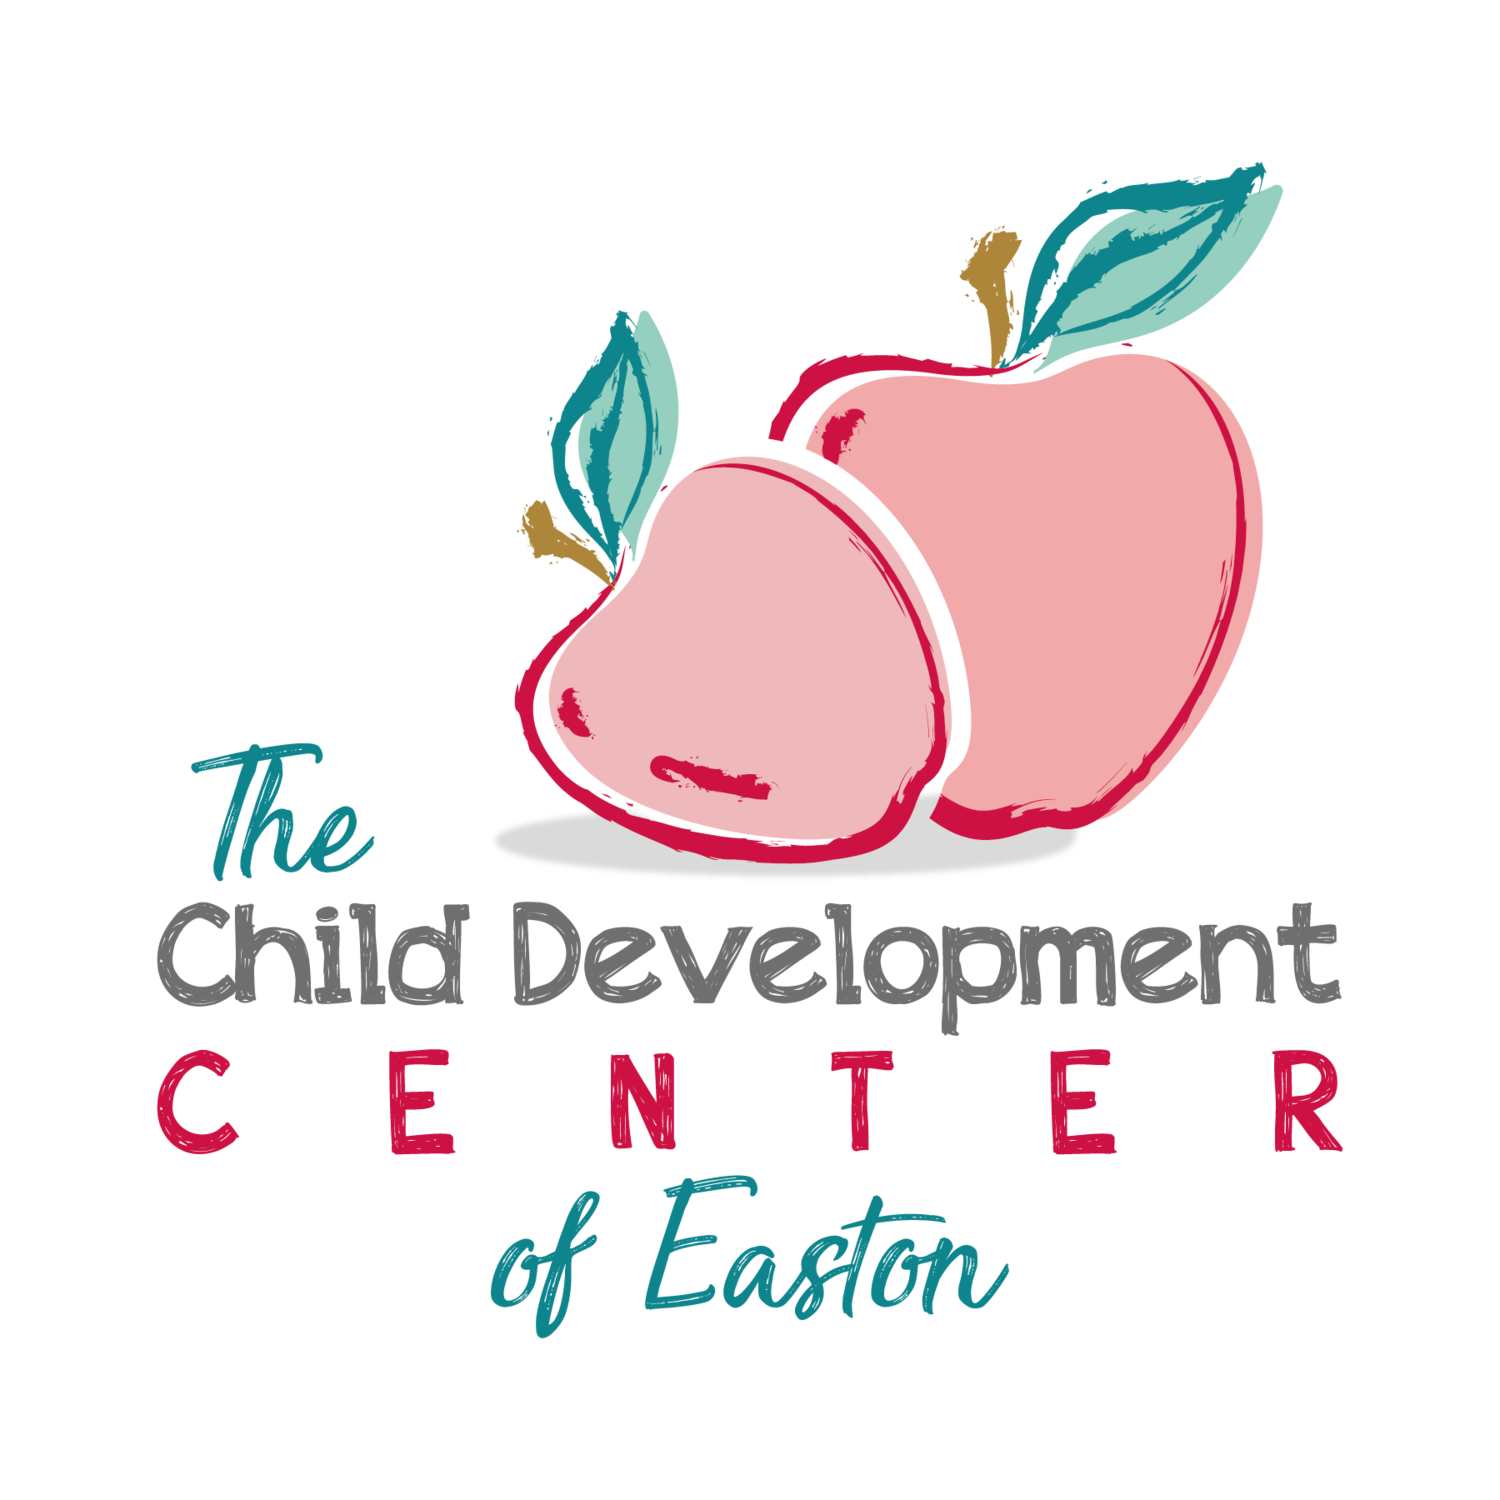 The Child Development Center of Easton